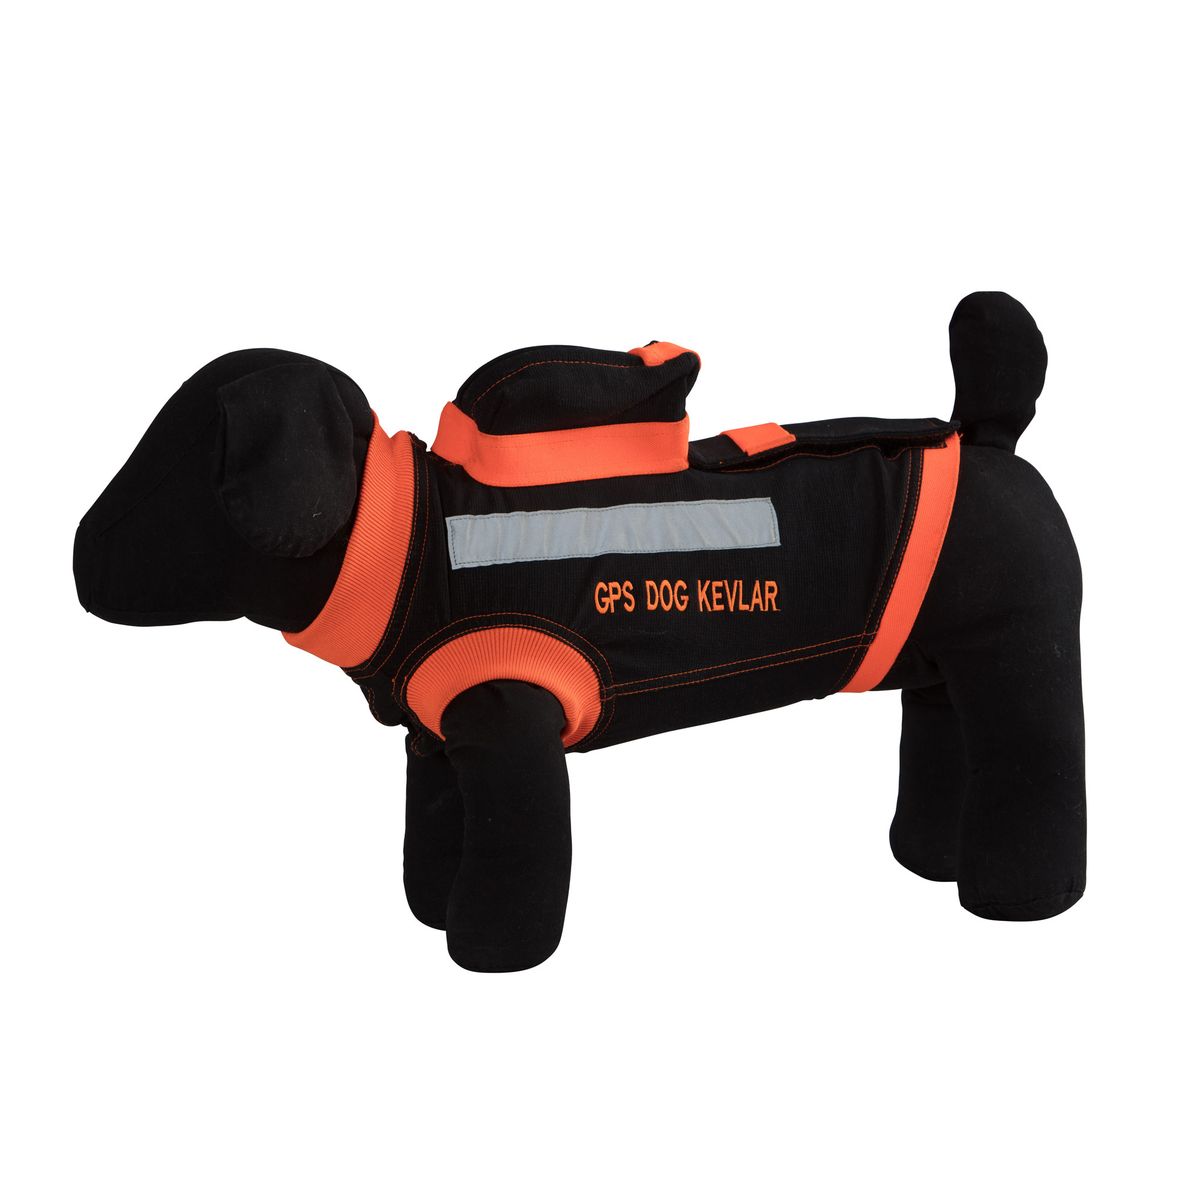 GPS Dog Kevlar